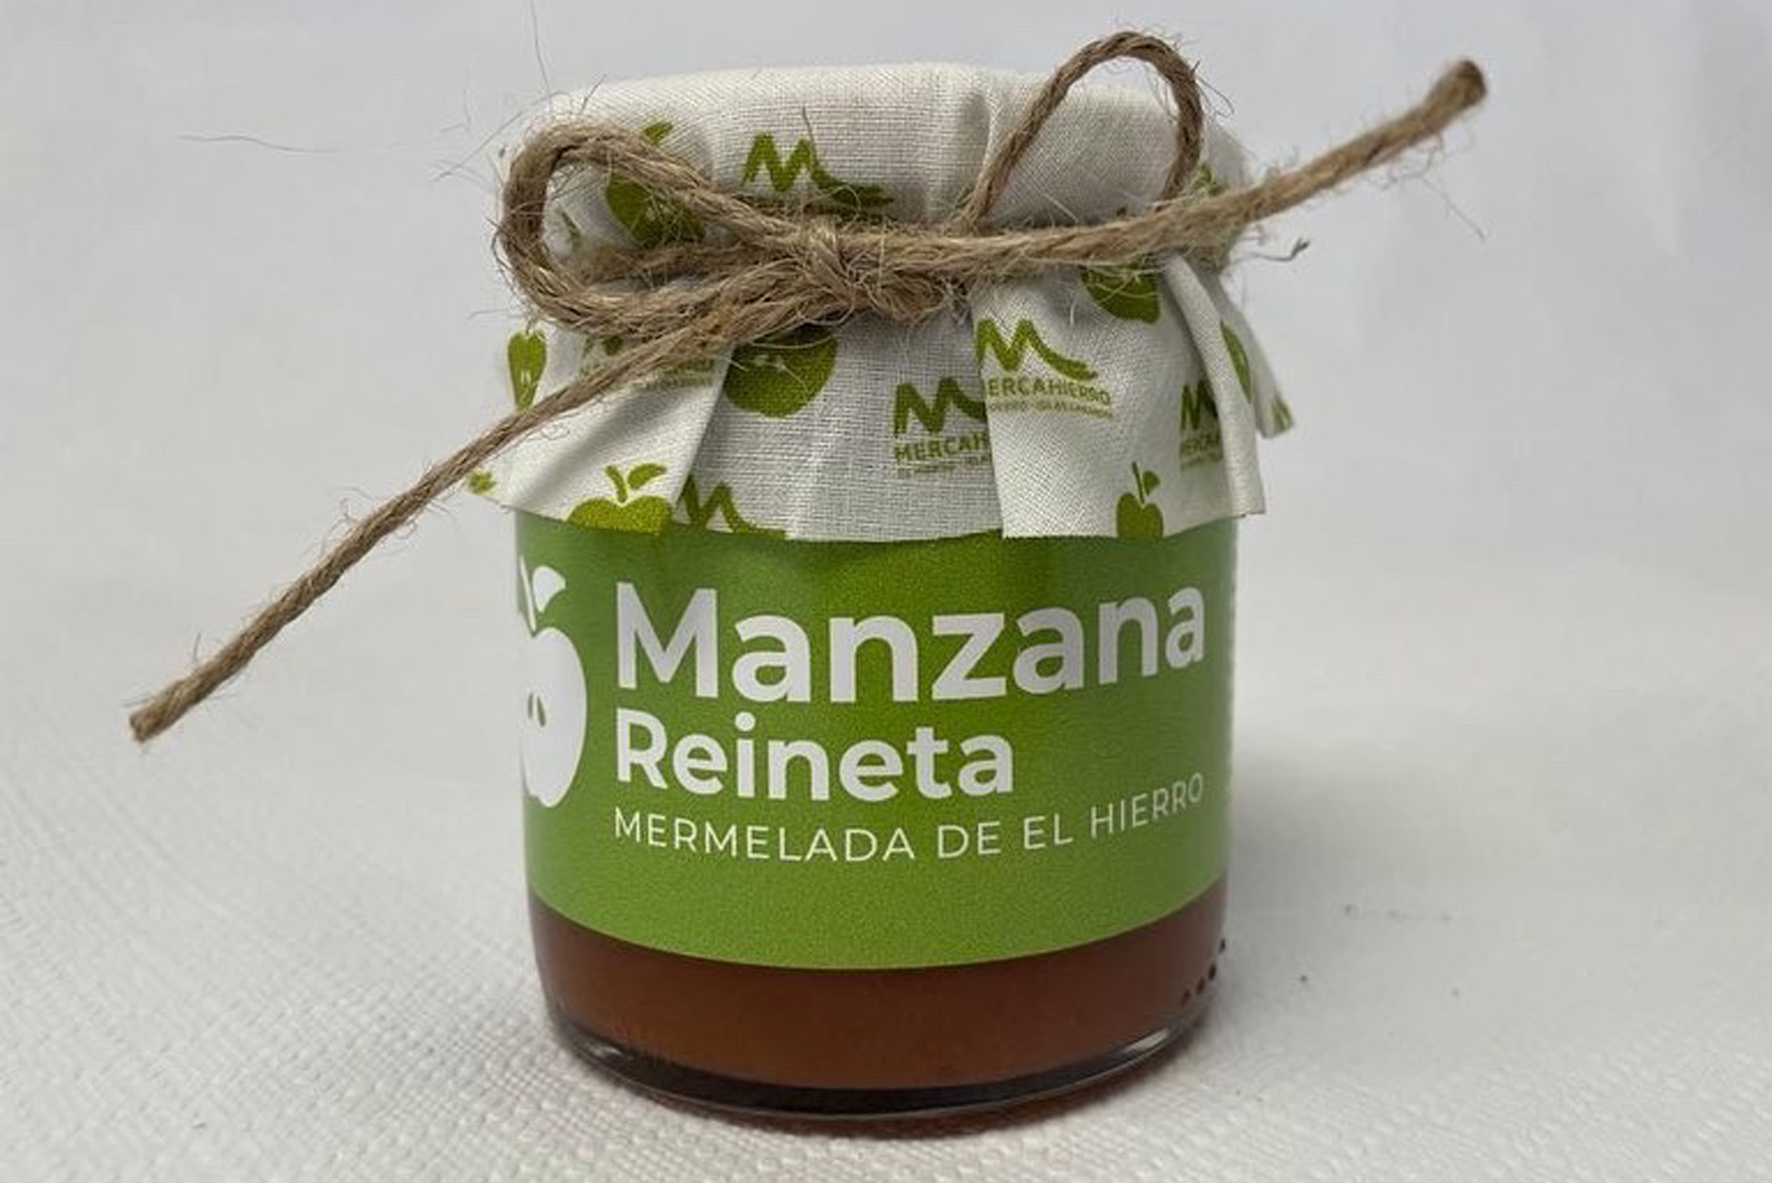 Mercahierro saca al mercado la nueva mermelada de Manzana Reineta